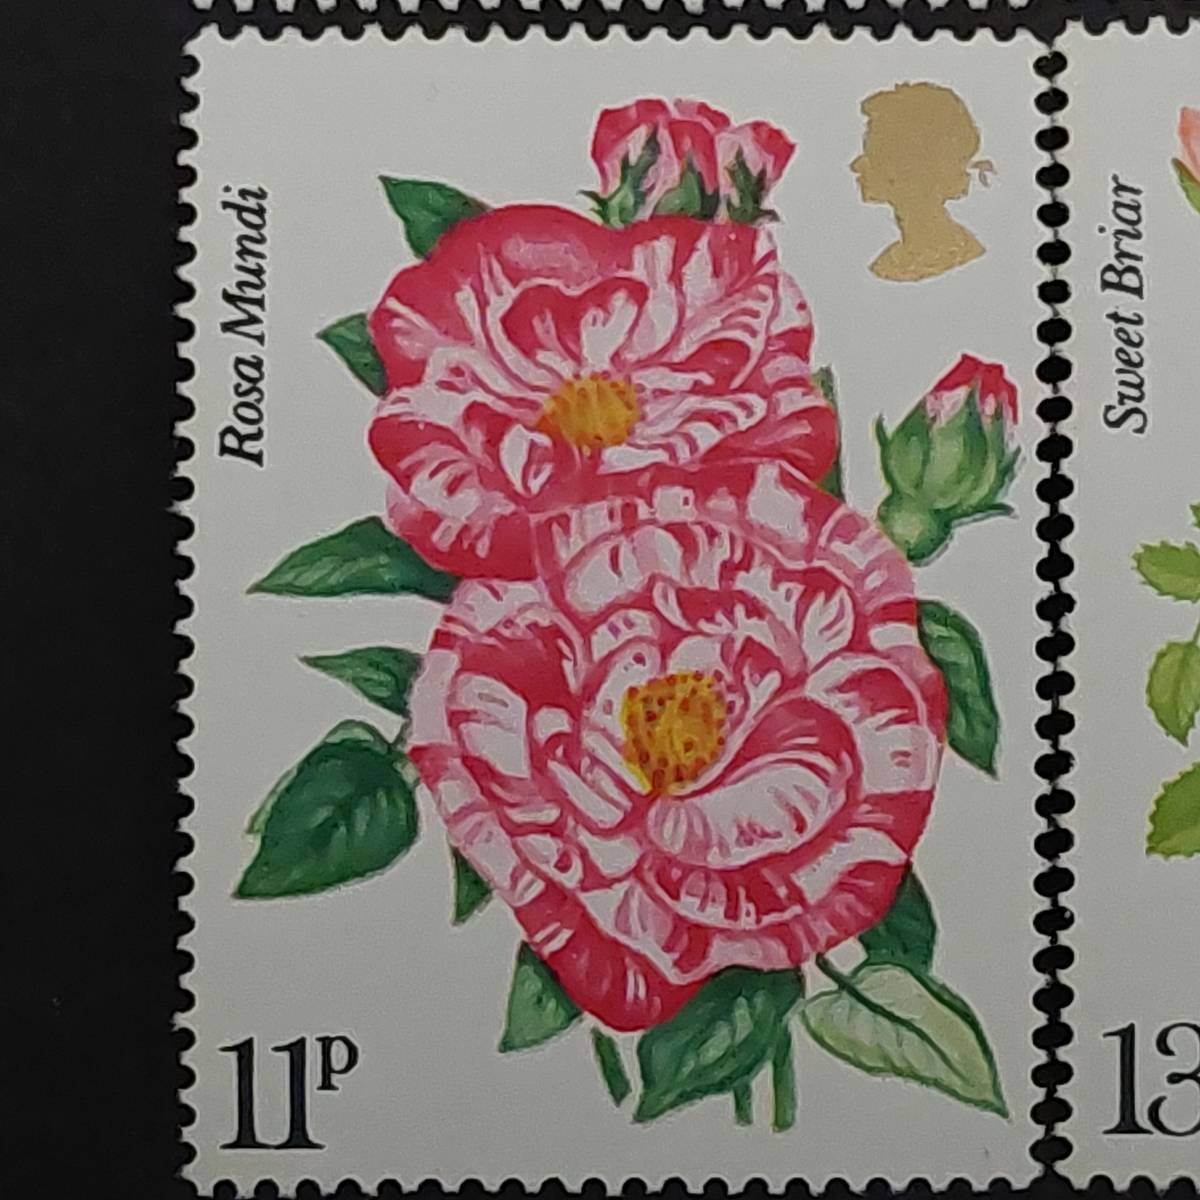 J109 イギリス切手「王立バラ協会創立100周年記念バラ切手4種完」1976年発行 未使用の画像4